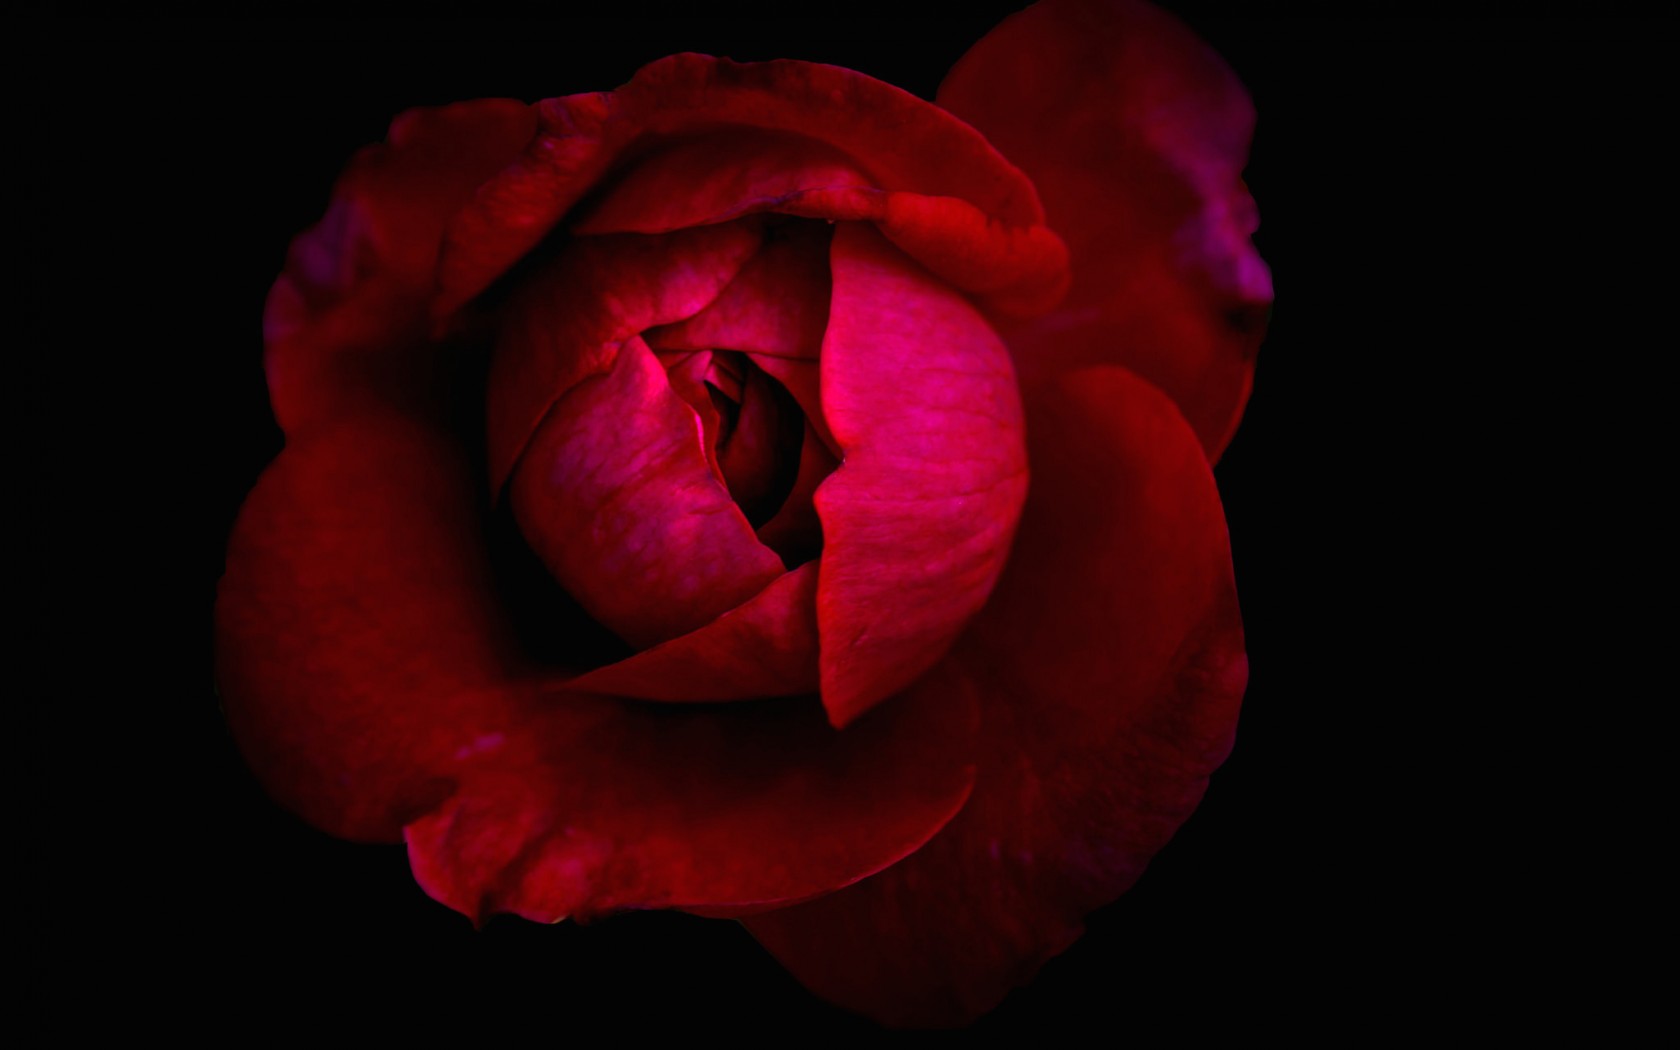 Download Red Flower Rosebud Close-up Red Rose Flower Nature Rose Wallpaper